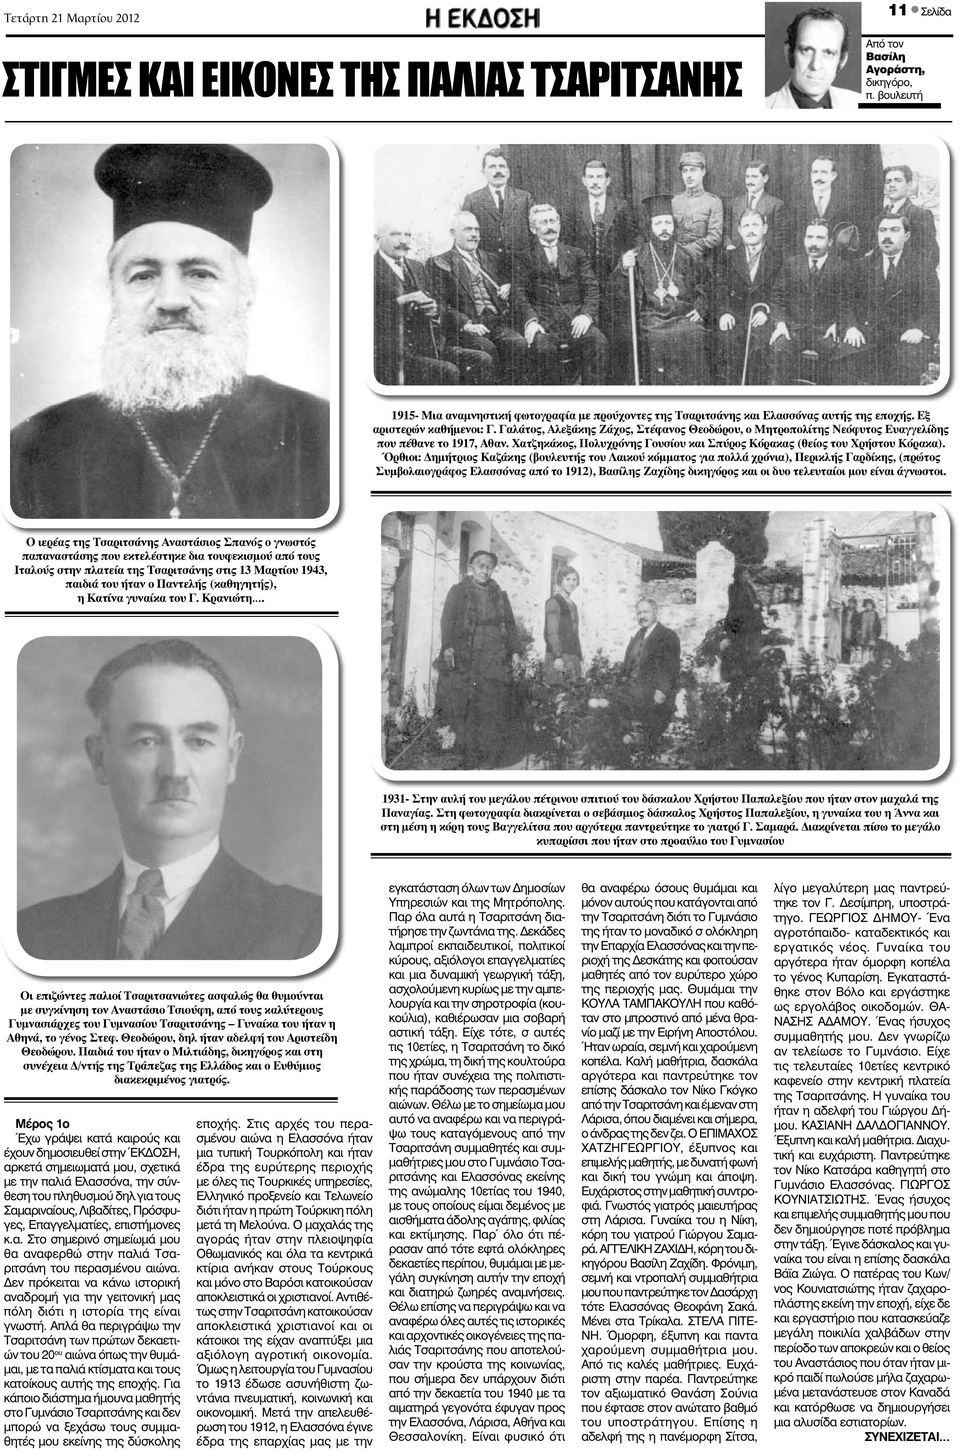 Γαλάτος, Αλεξάκης Ζάχος, Στέφανος Θεοδώρου, ο Μητροπολίτης Νεόφυτος Ευαγγελίδης που πέθανε το 1917, Αθαν. Χατζηκάκος, Πολυχρόνης Γουσίου και Σπύρος Κόρακας (θείος του Χρήστου Κόρακα).